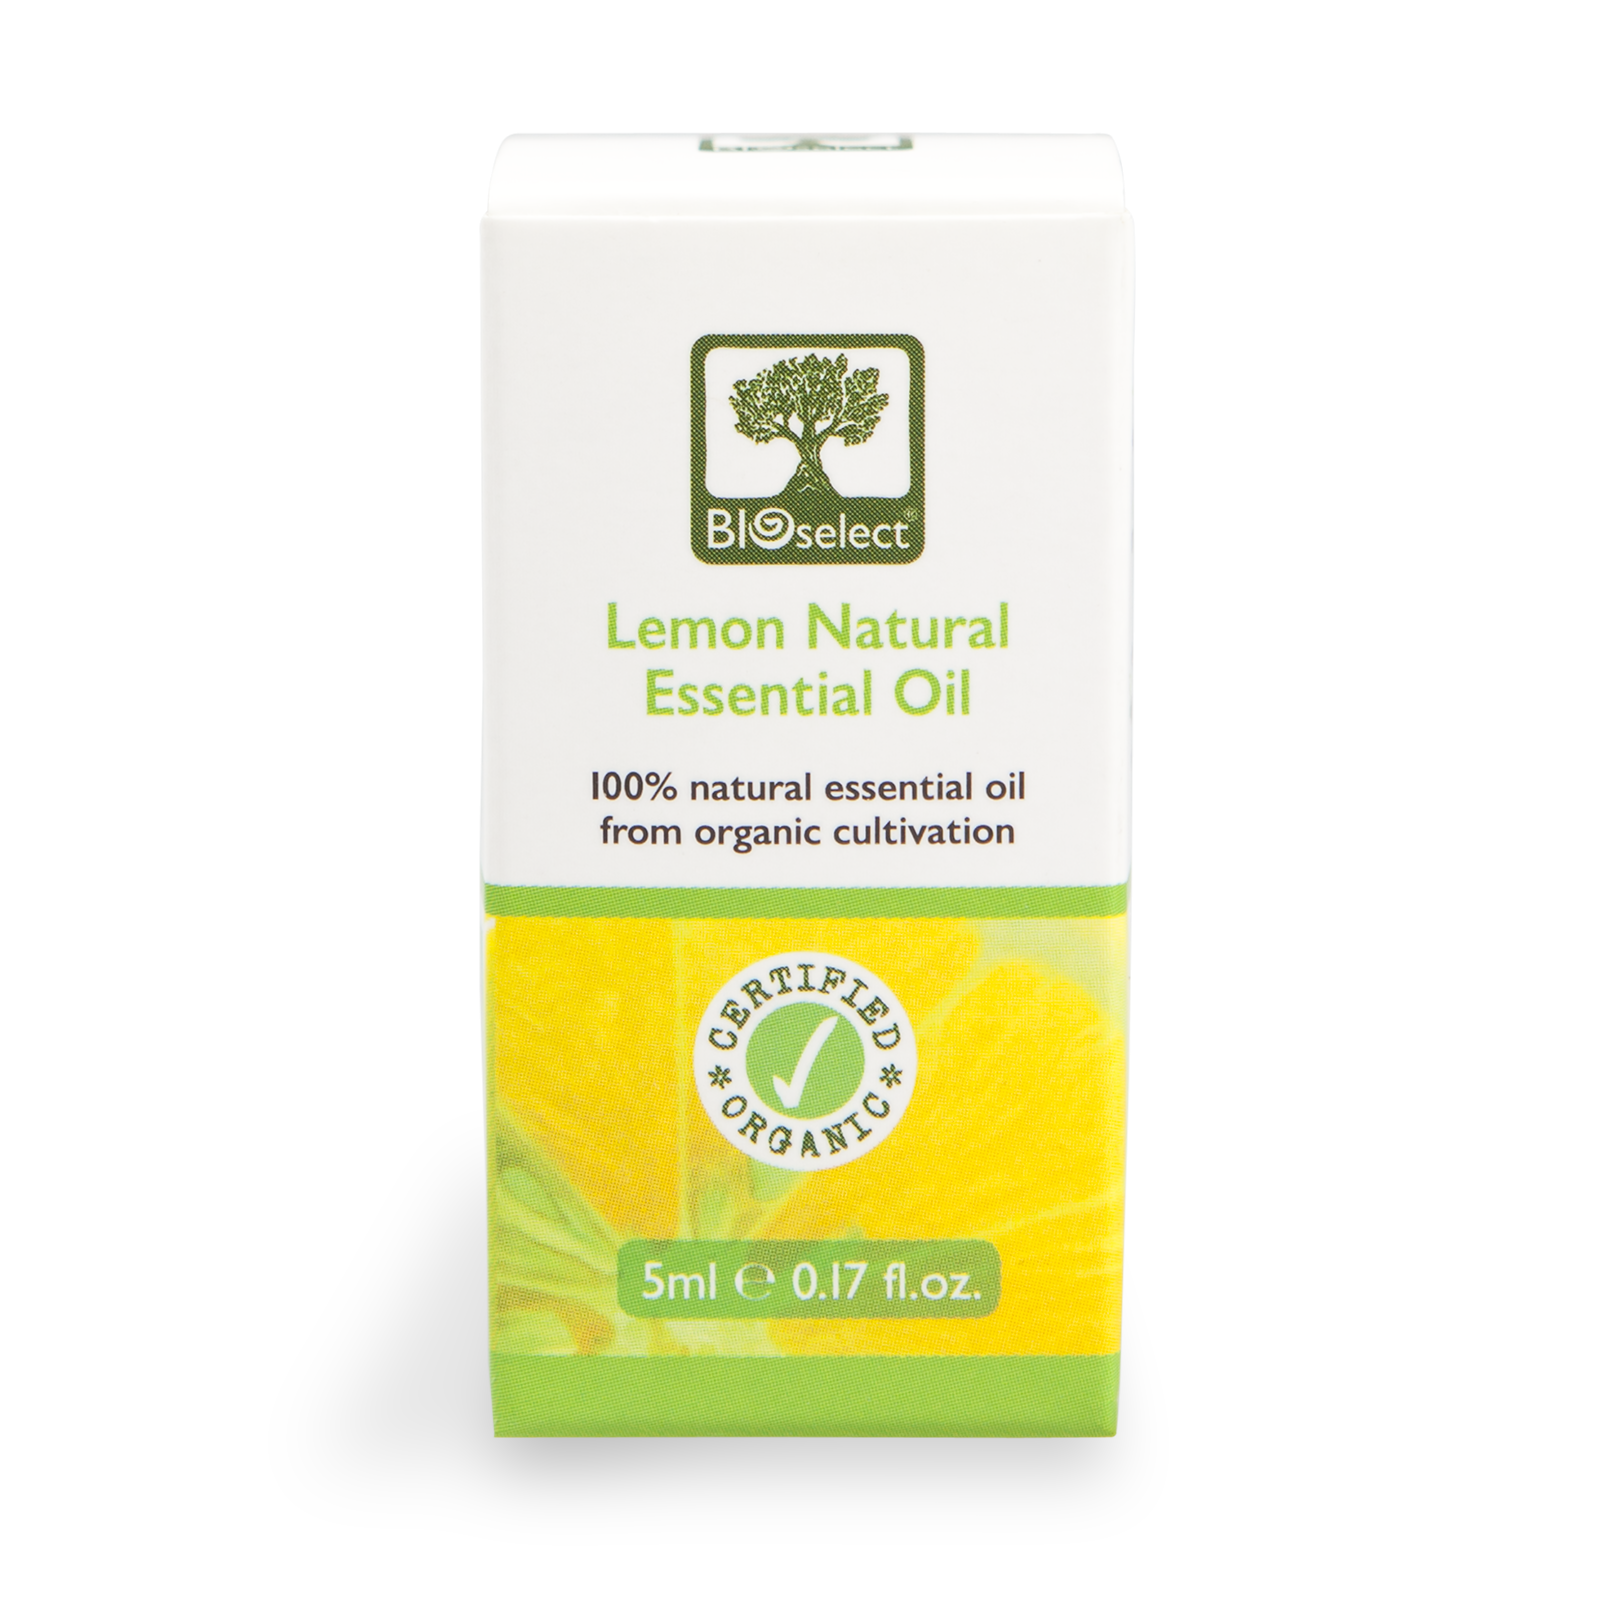 Bioselect Lemon Natural Essential Oil Certified Organic